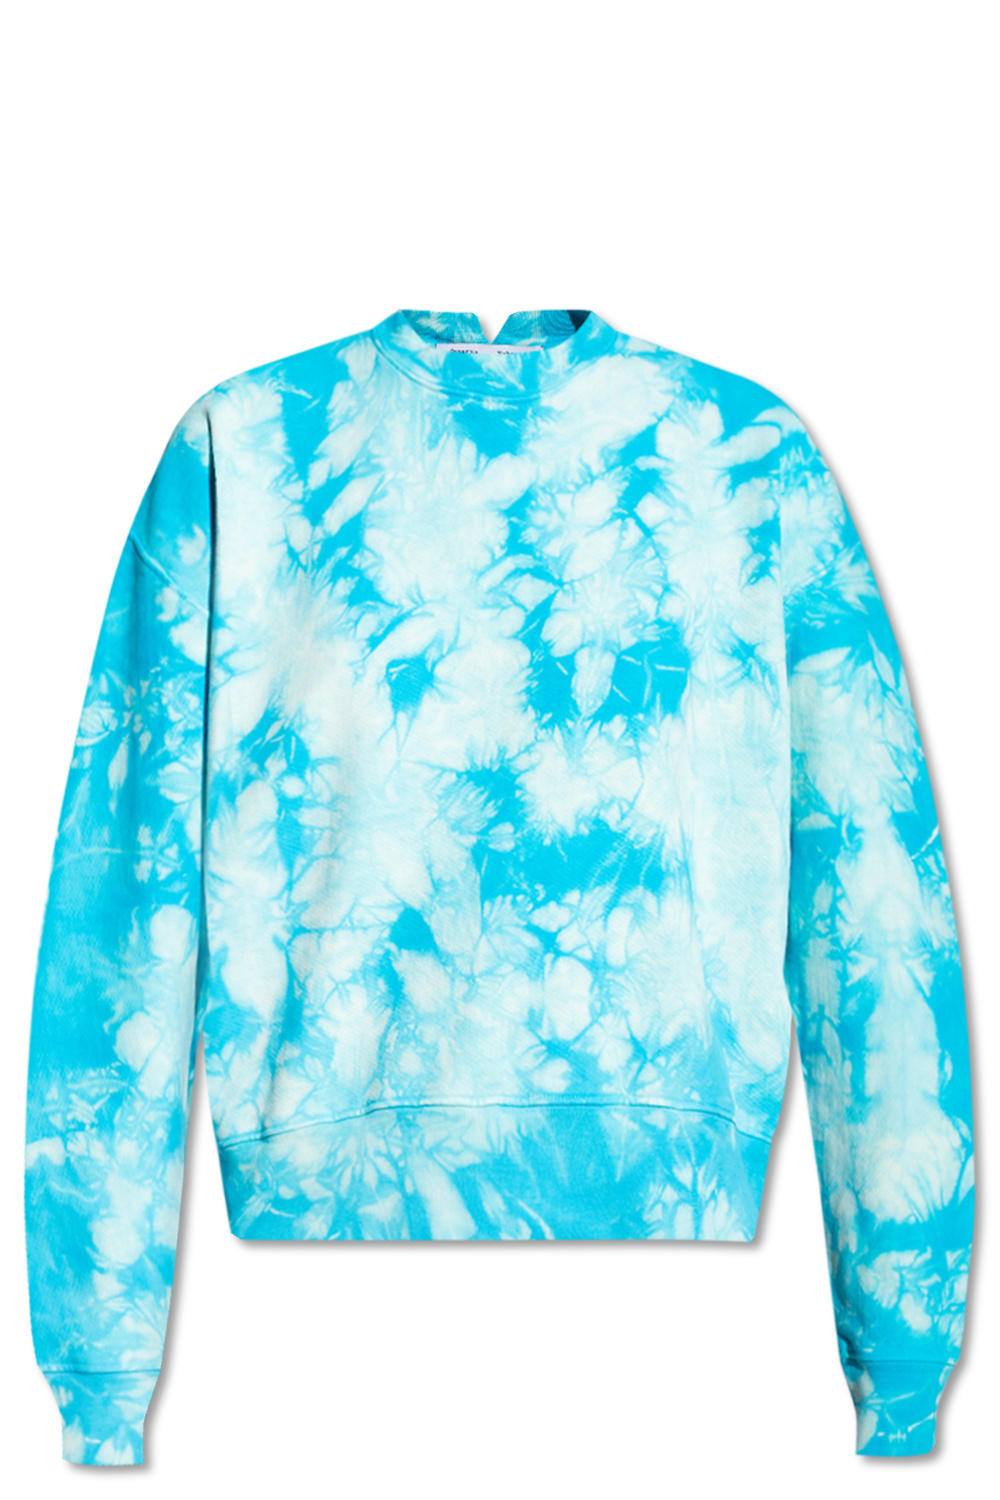 Gucci Jersey Cardigan Sweatshirt in Blue Tie Dye | MTYCI